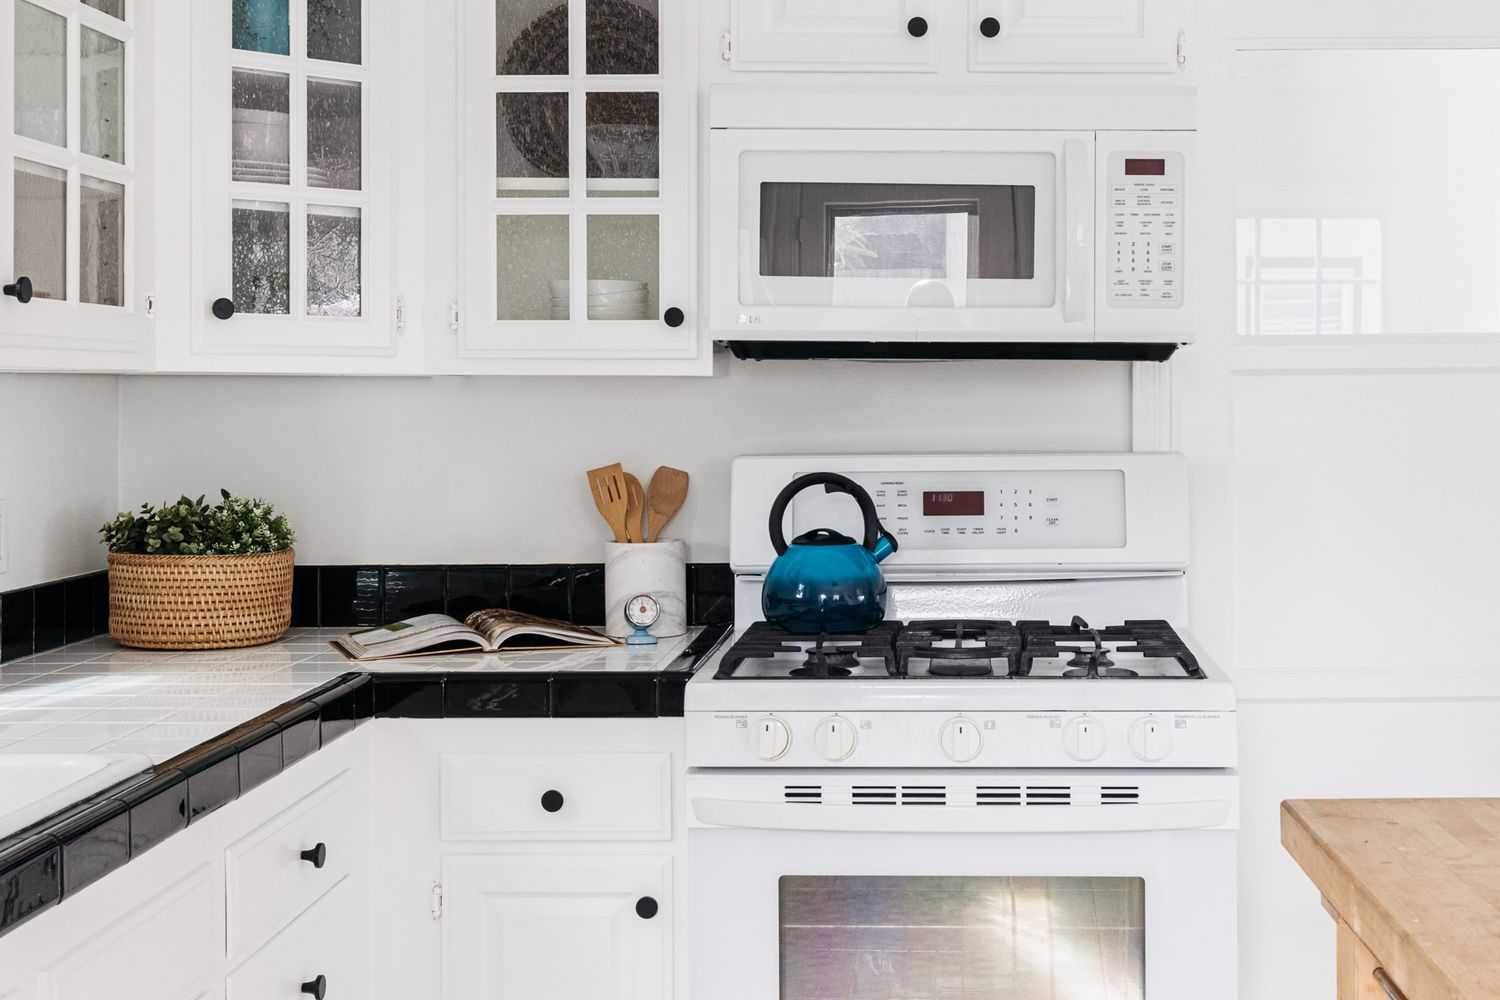 Moderne Küche mit komplett weißen Schränken und Geräten mit hellem Dekor auf schwarzen und weißen quadratischen Fliesen